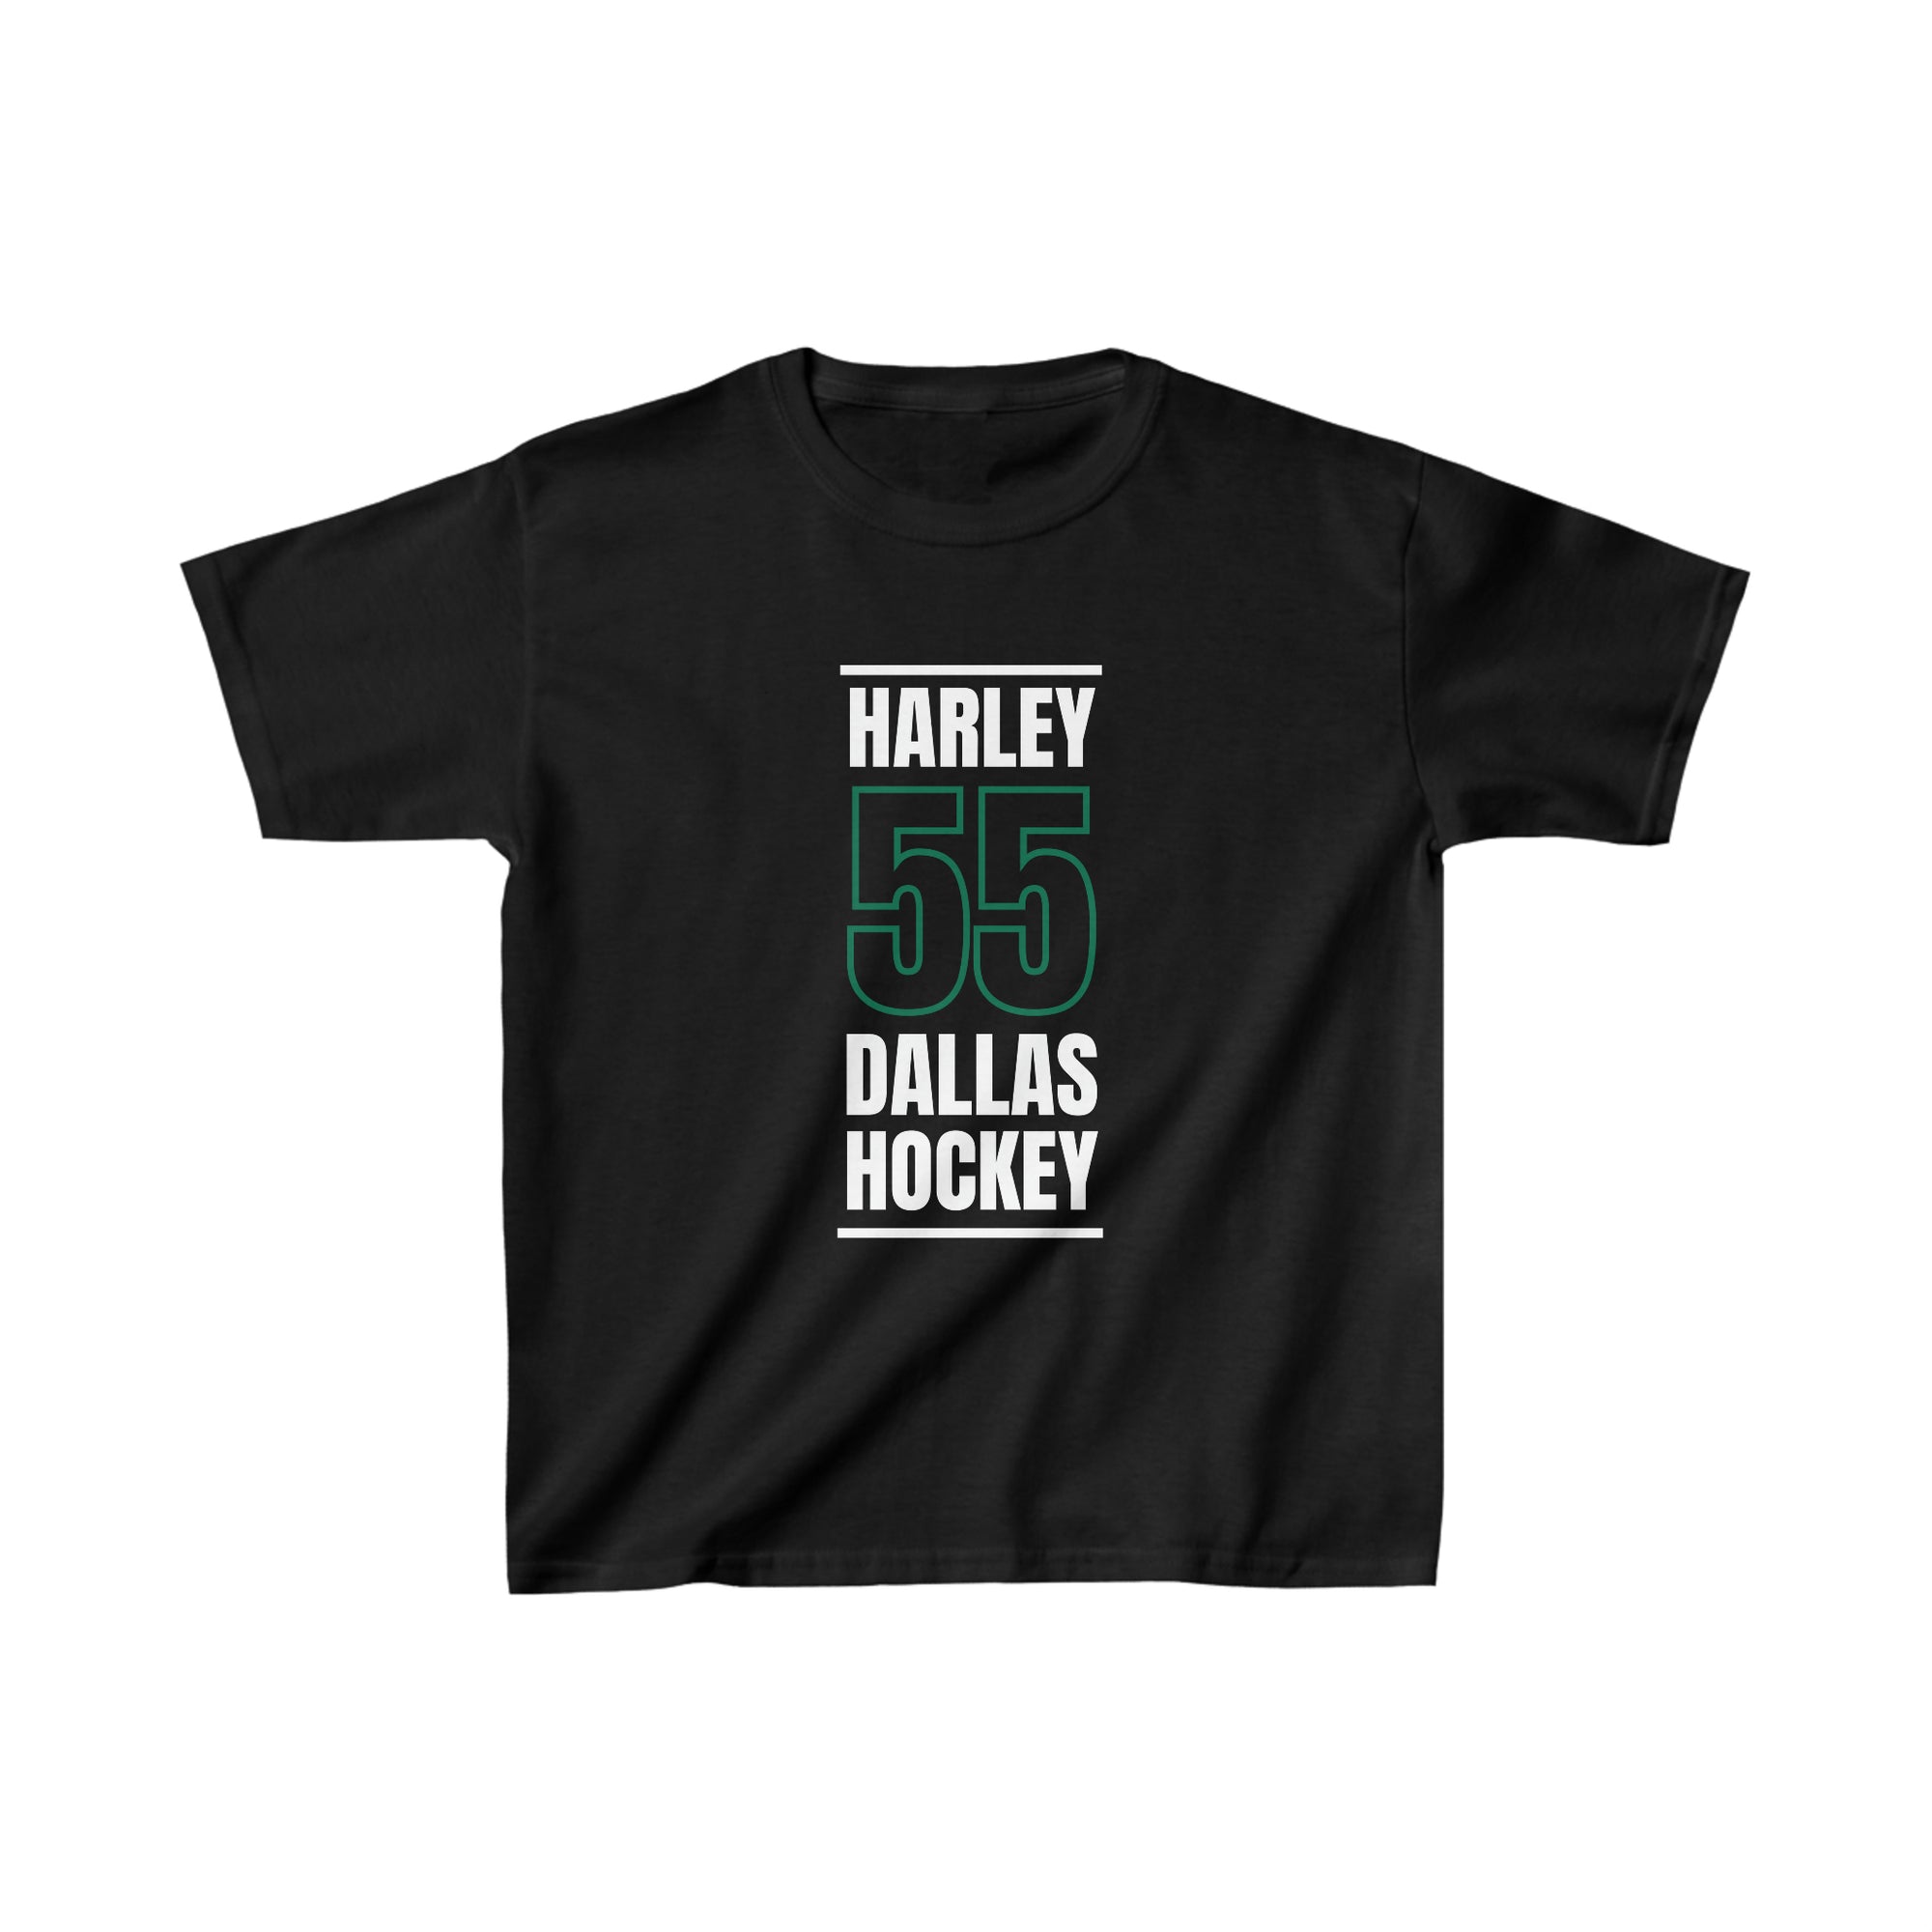 Harley 55 Dallas Hockey Black Vertical Design Kids Tee